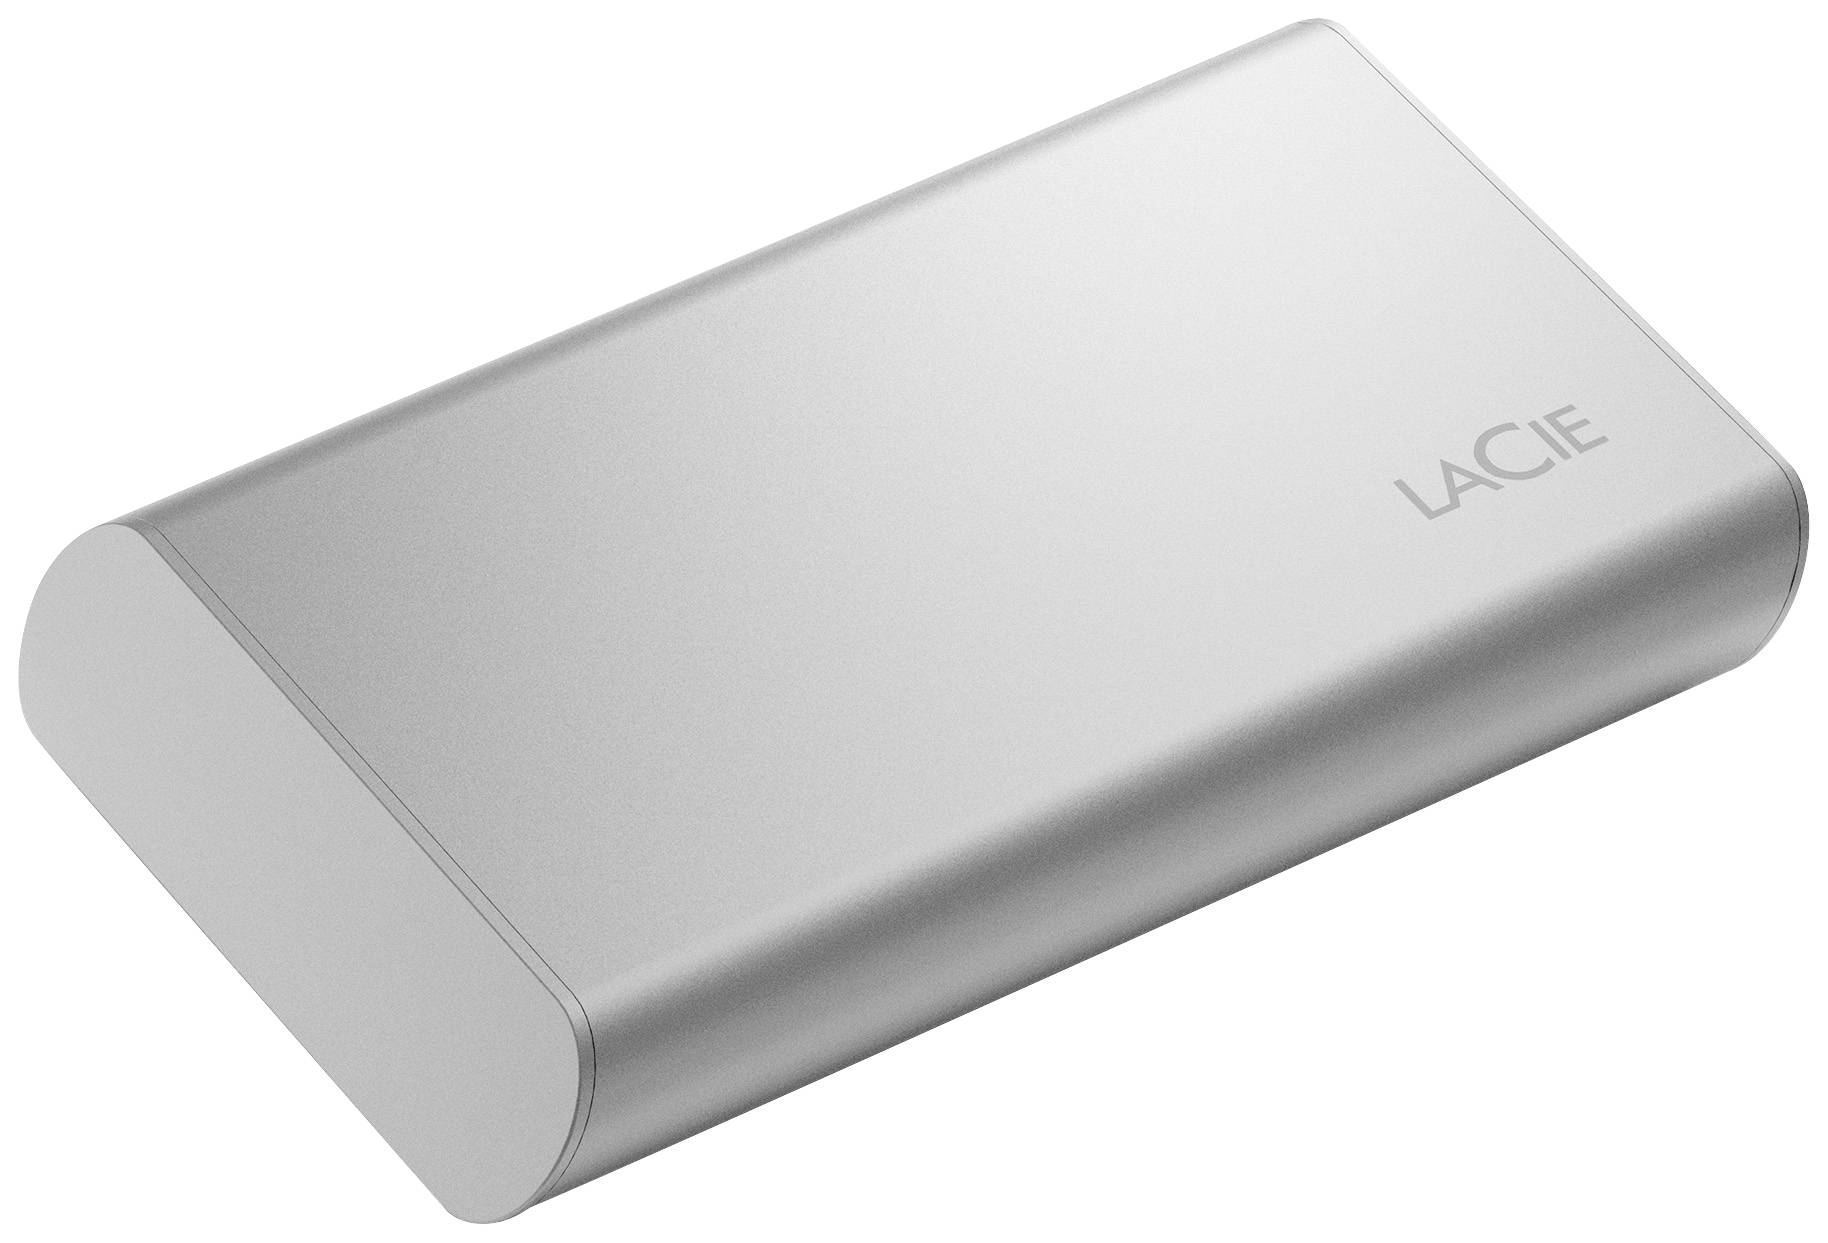 LaCie 2 TB Mobile SSD – säker SSD med usb-c – grå - Apple (SE)